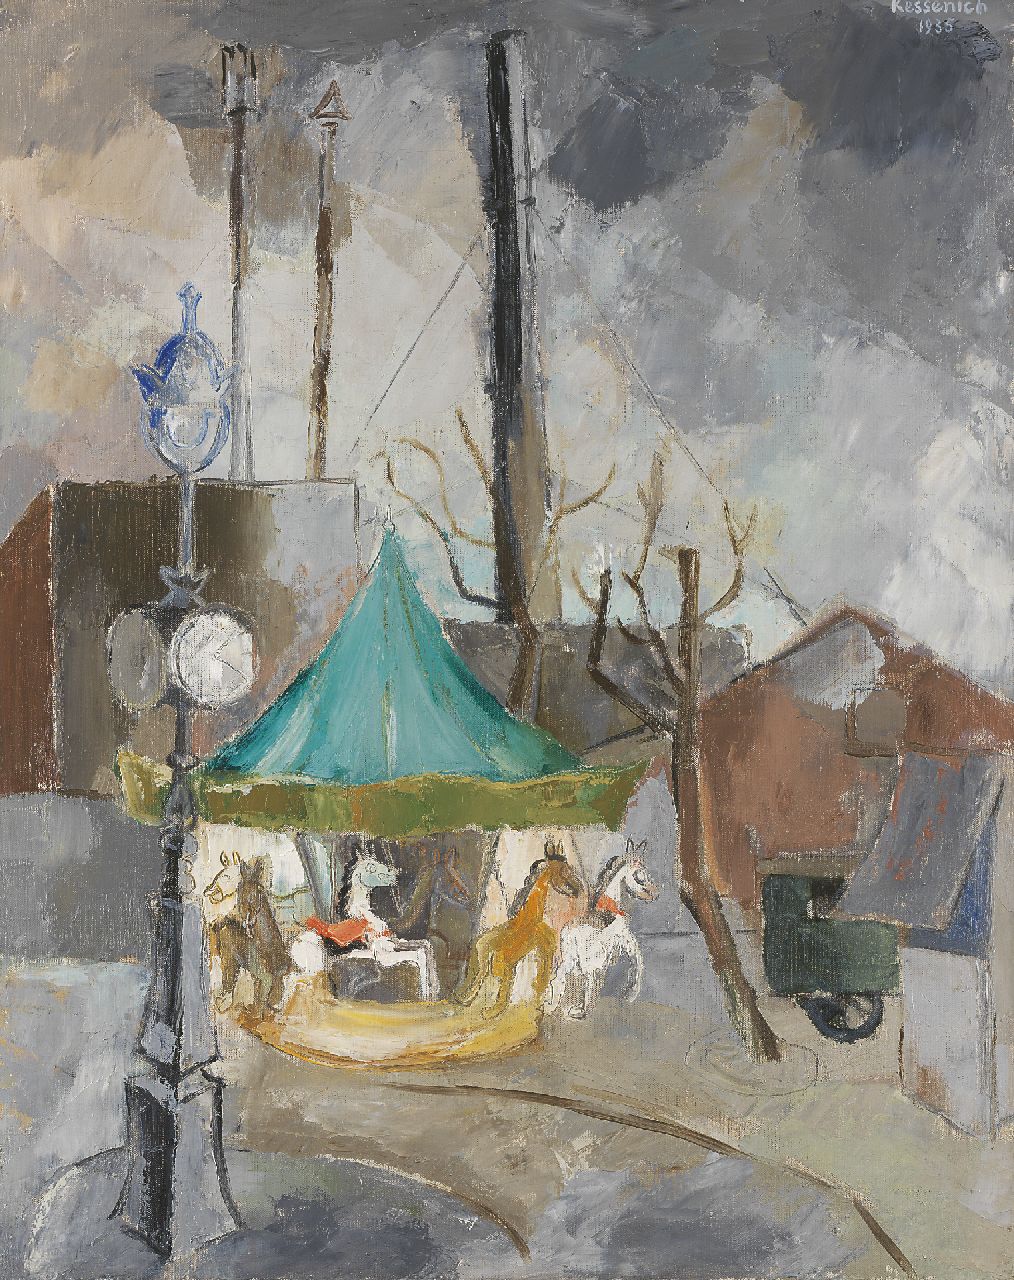 Judy Michiels van Kessenich | A merry-go-round in Paris, Öl auf Leinwand, 81,5 x 65,5 cm, signed u.r. und dated 1935